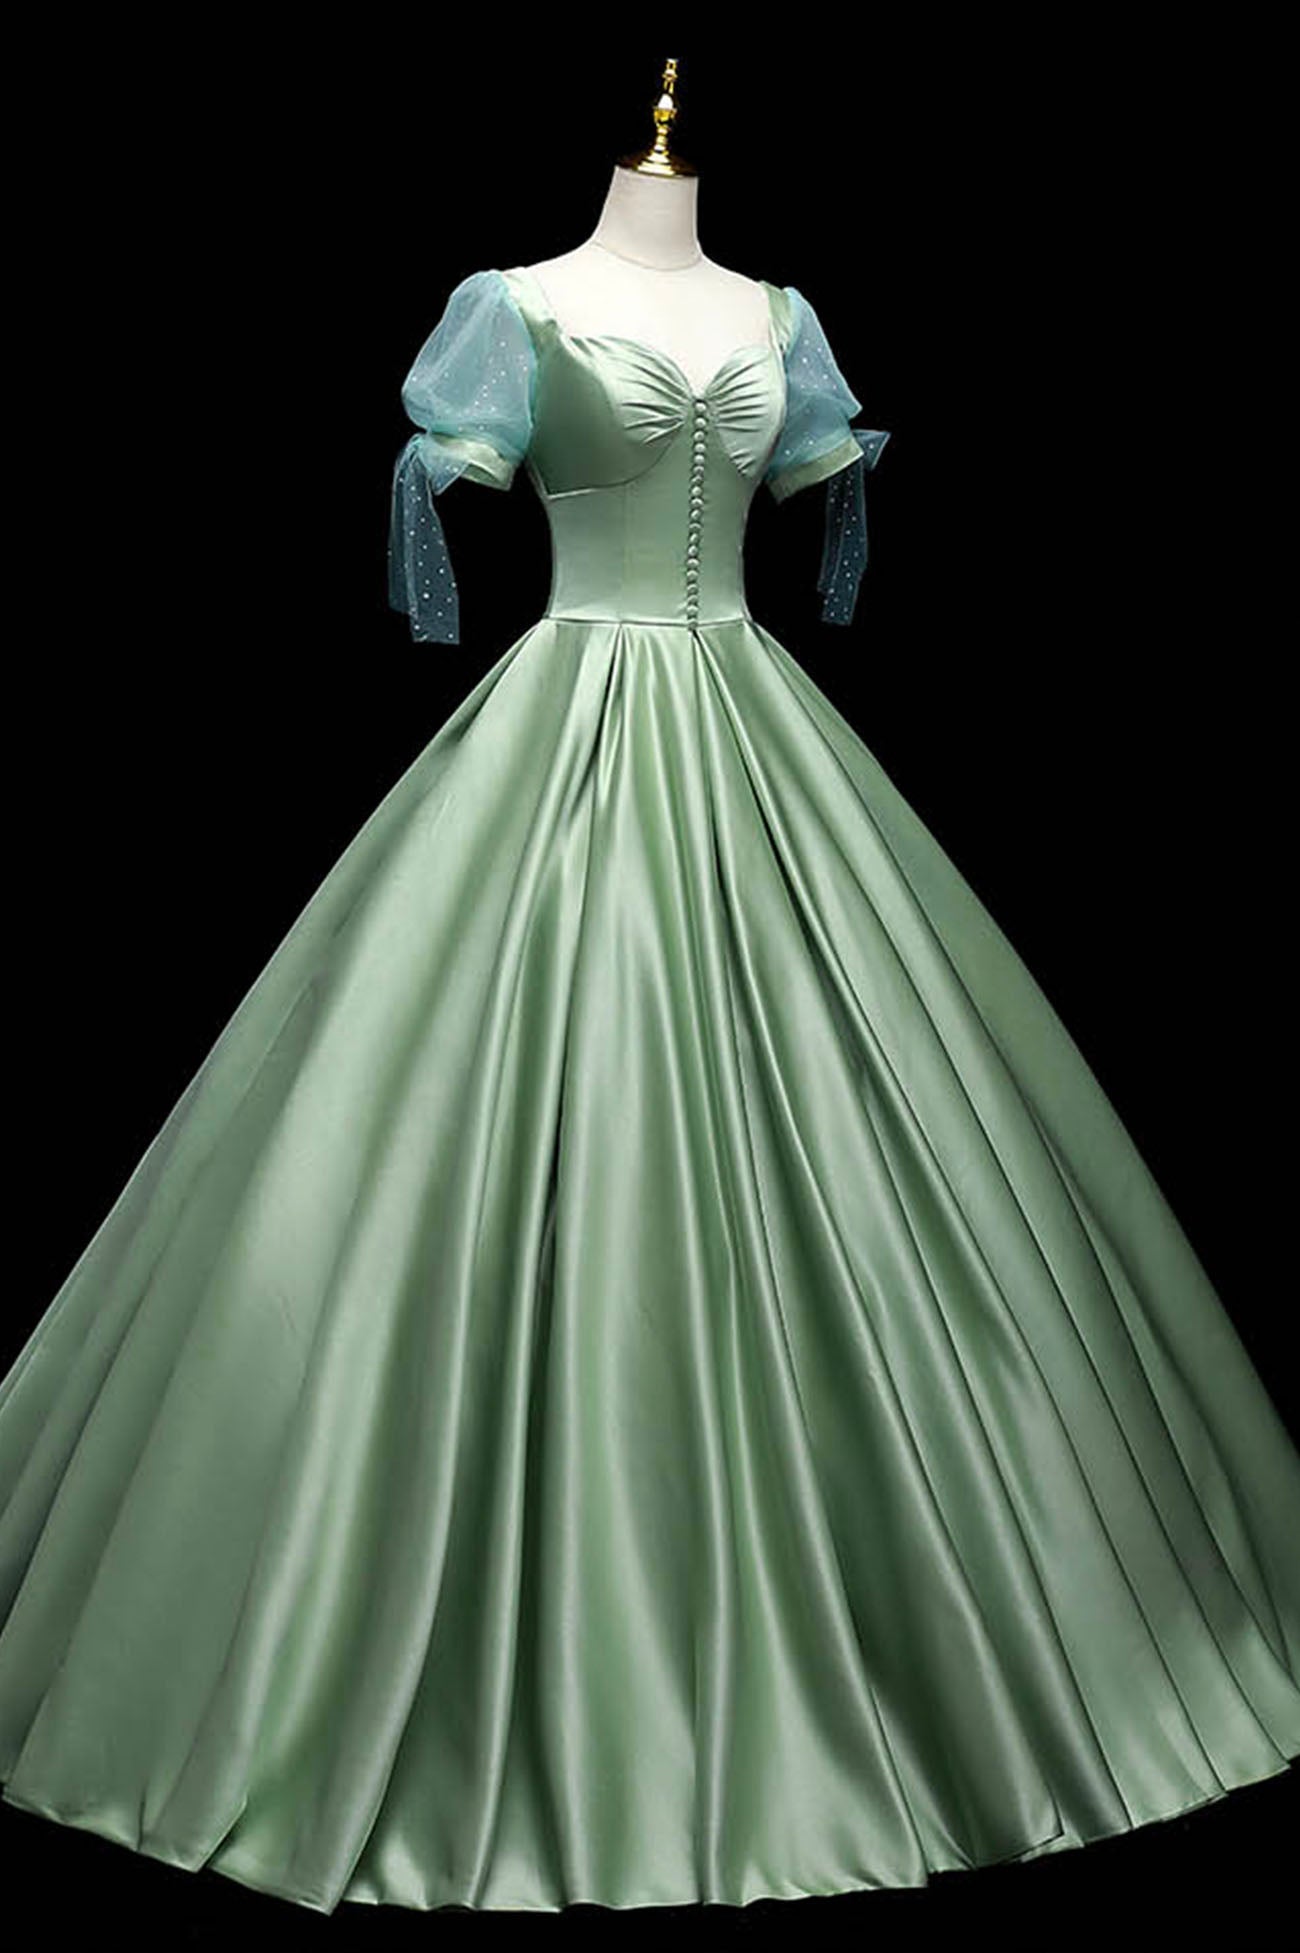 Long Dress, Green Satin Long A-Line Ball Gown, Green Short Sleeve Evening Gown